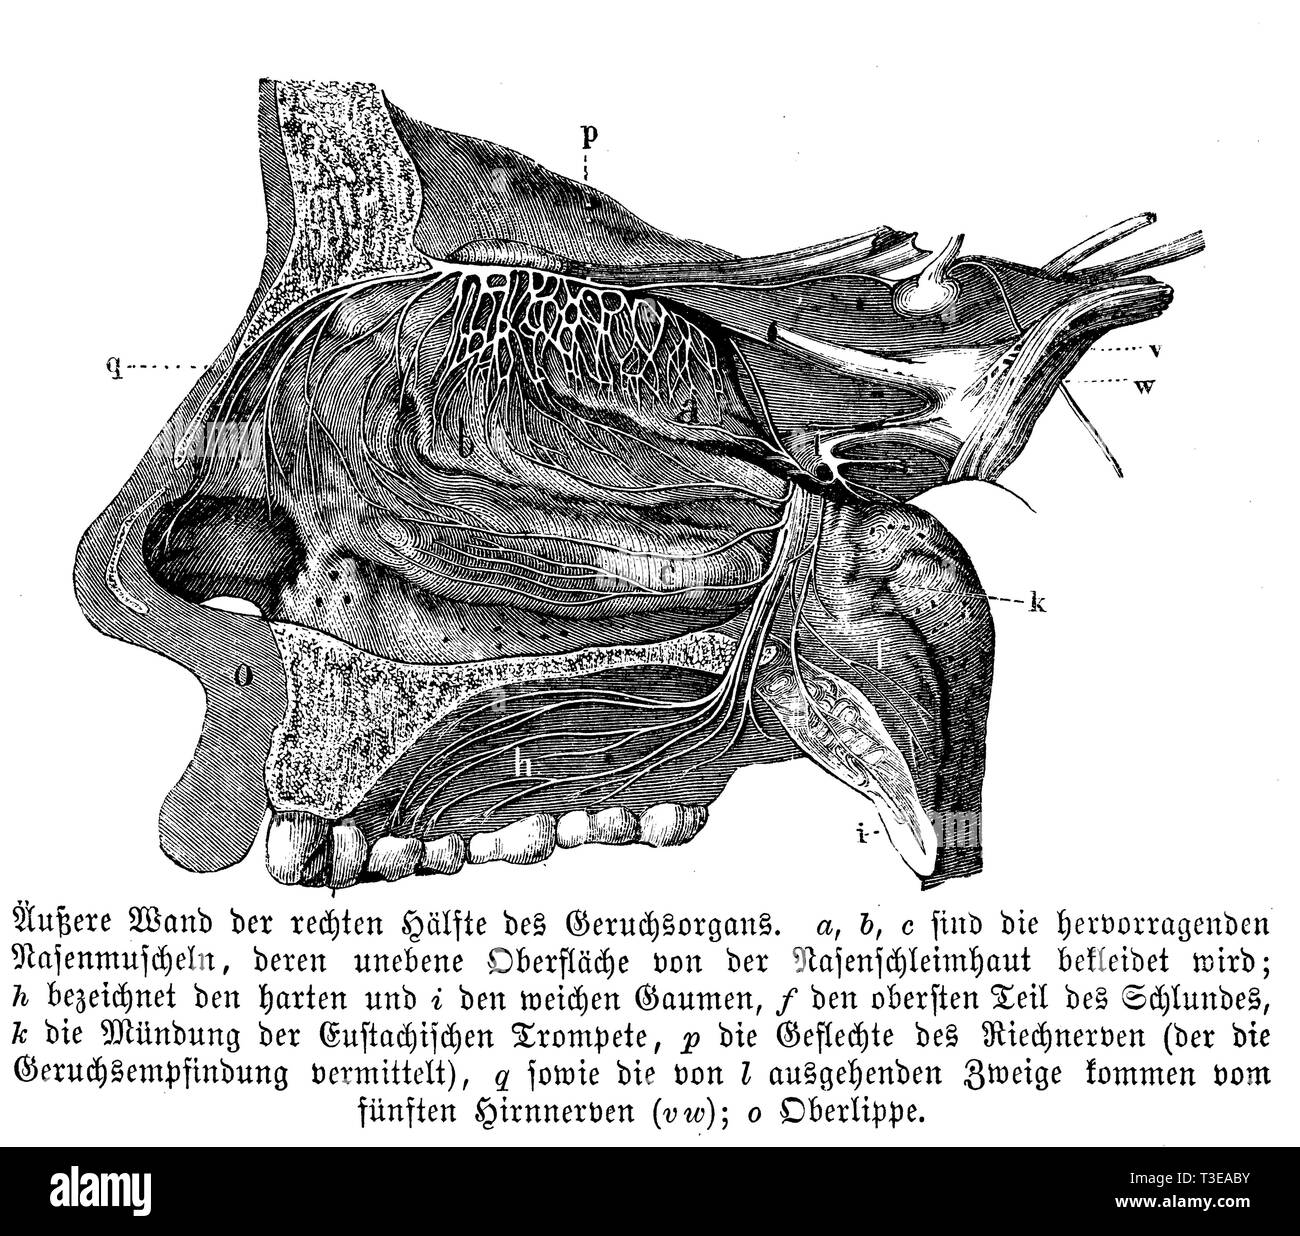 Umano: la parete esterna della metà destra dell'organo olfattivo. a, b, c) sono prominenti conchae nasali la cui superficie irregolare è coperto dalla mucosa nasale; h) indicano il disco e i) il palato molle; f) la parte superiore della gola; k) bocca della tromba Eustachian; p) plessi del nervo olfattivo (d) sono le pareti esterne dell'organo olfattivo., anonym Foto Stock